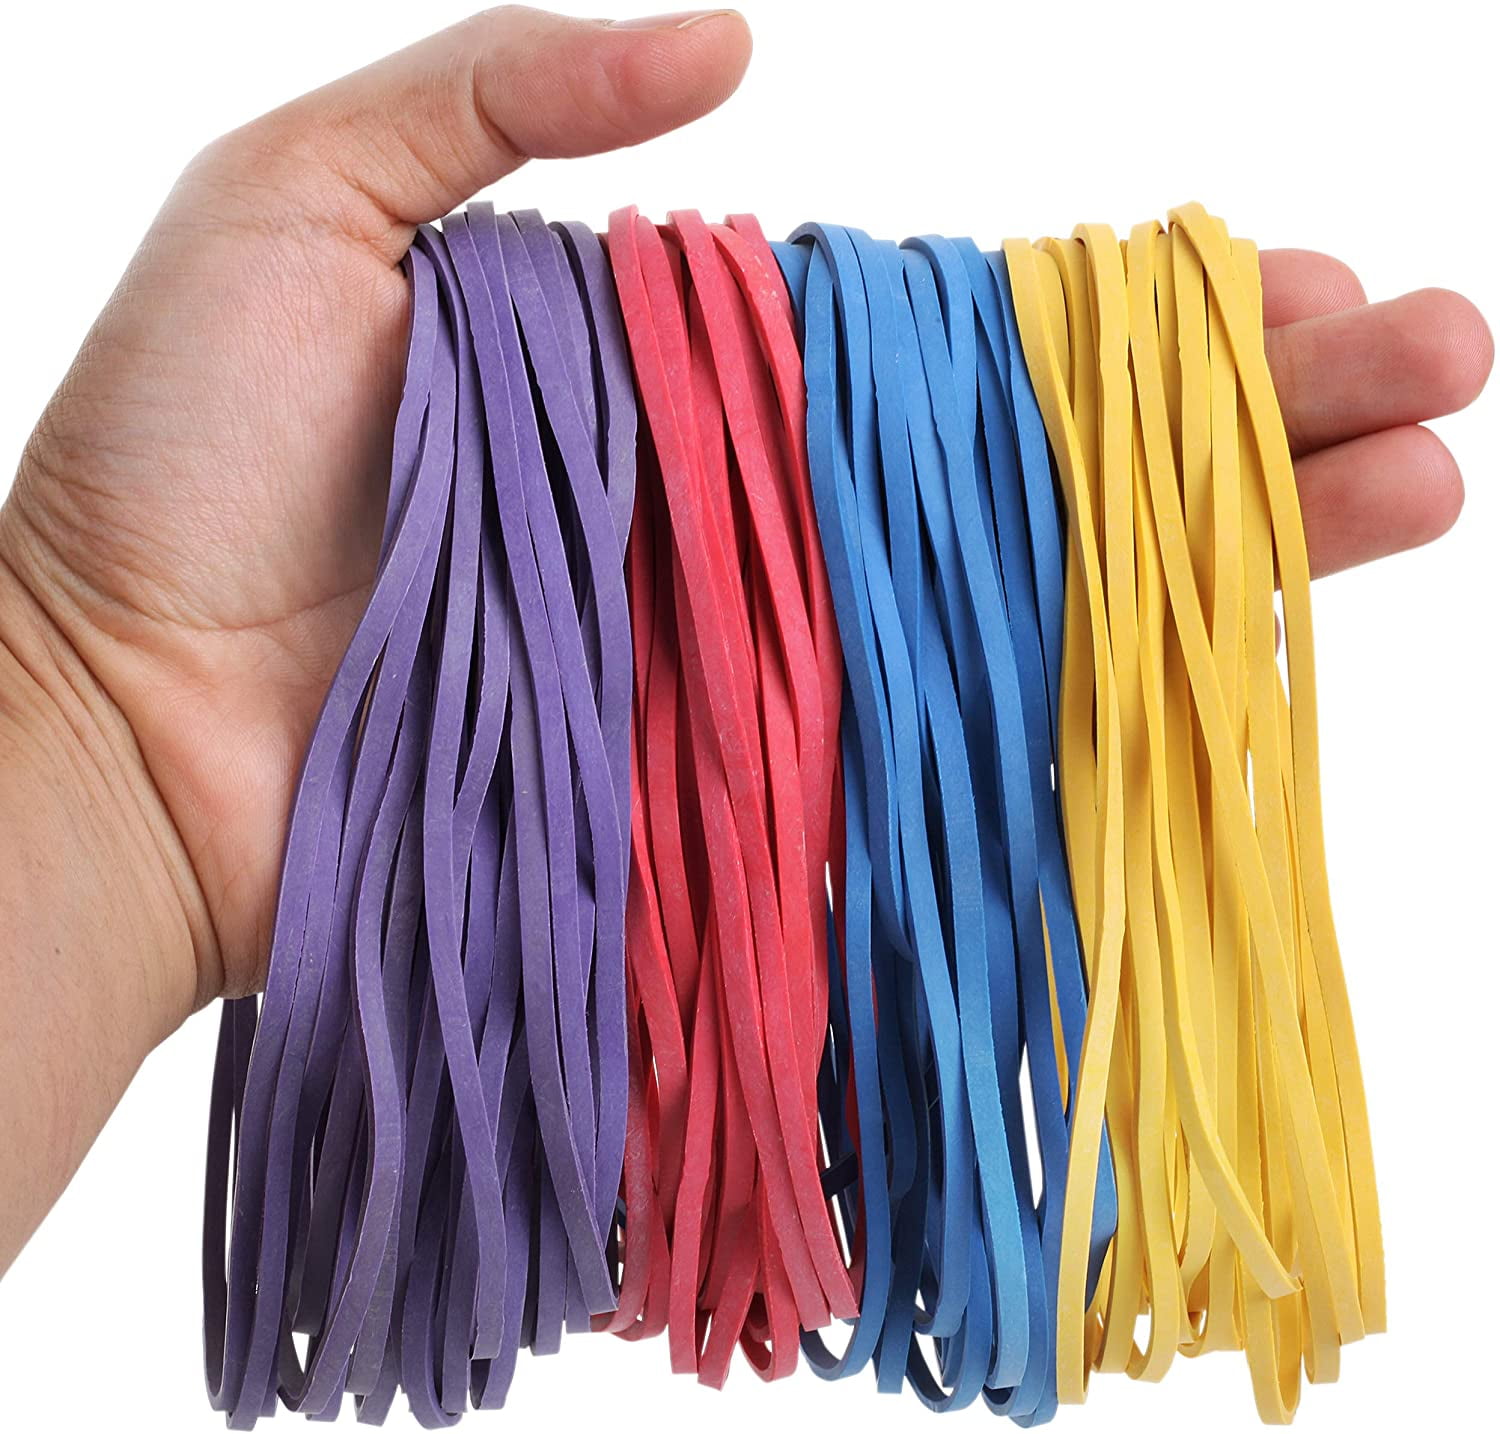 Mr. Pen- Large Rubber Bands, 120 Pack, Assorted Color, Big